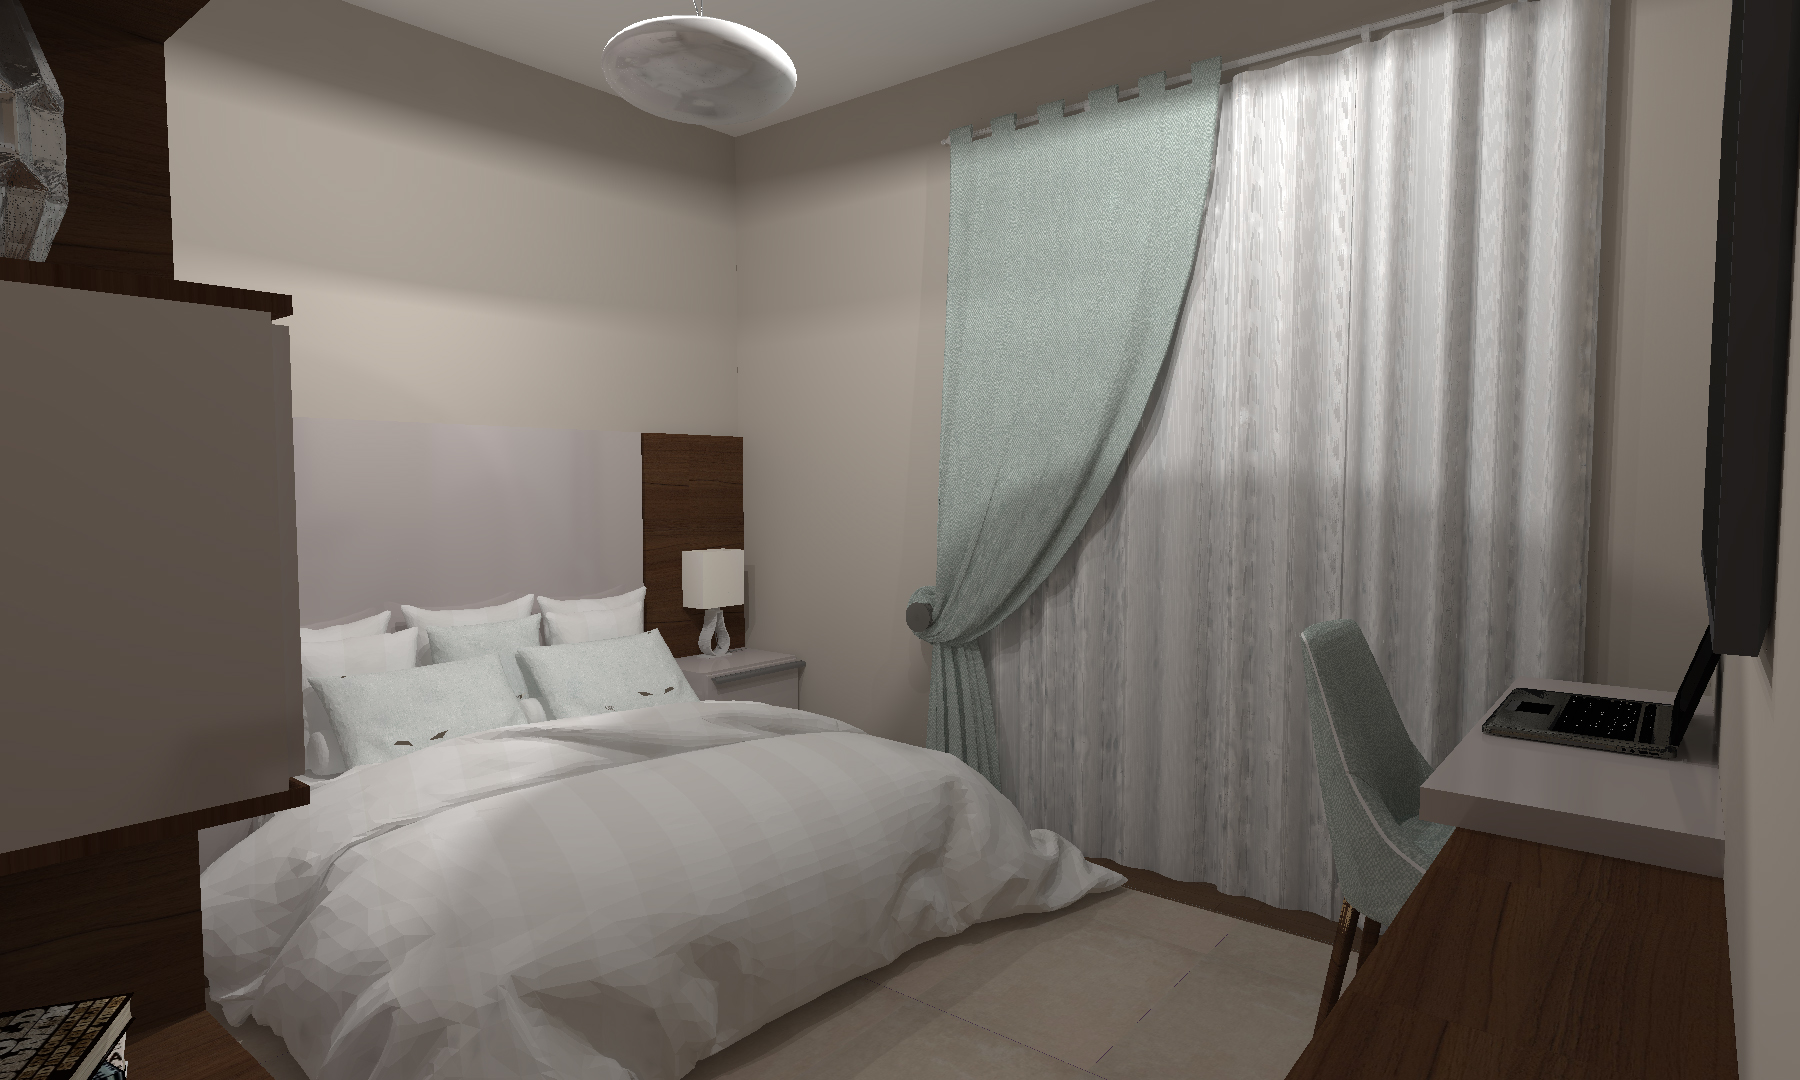 Proiect Design Interior Amenajare Apartament 1 Timisoara